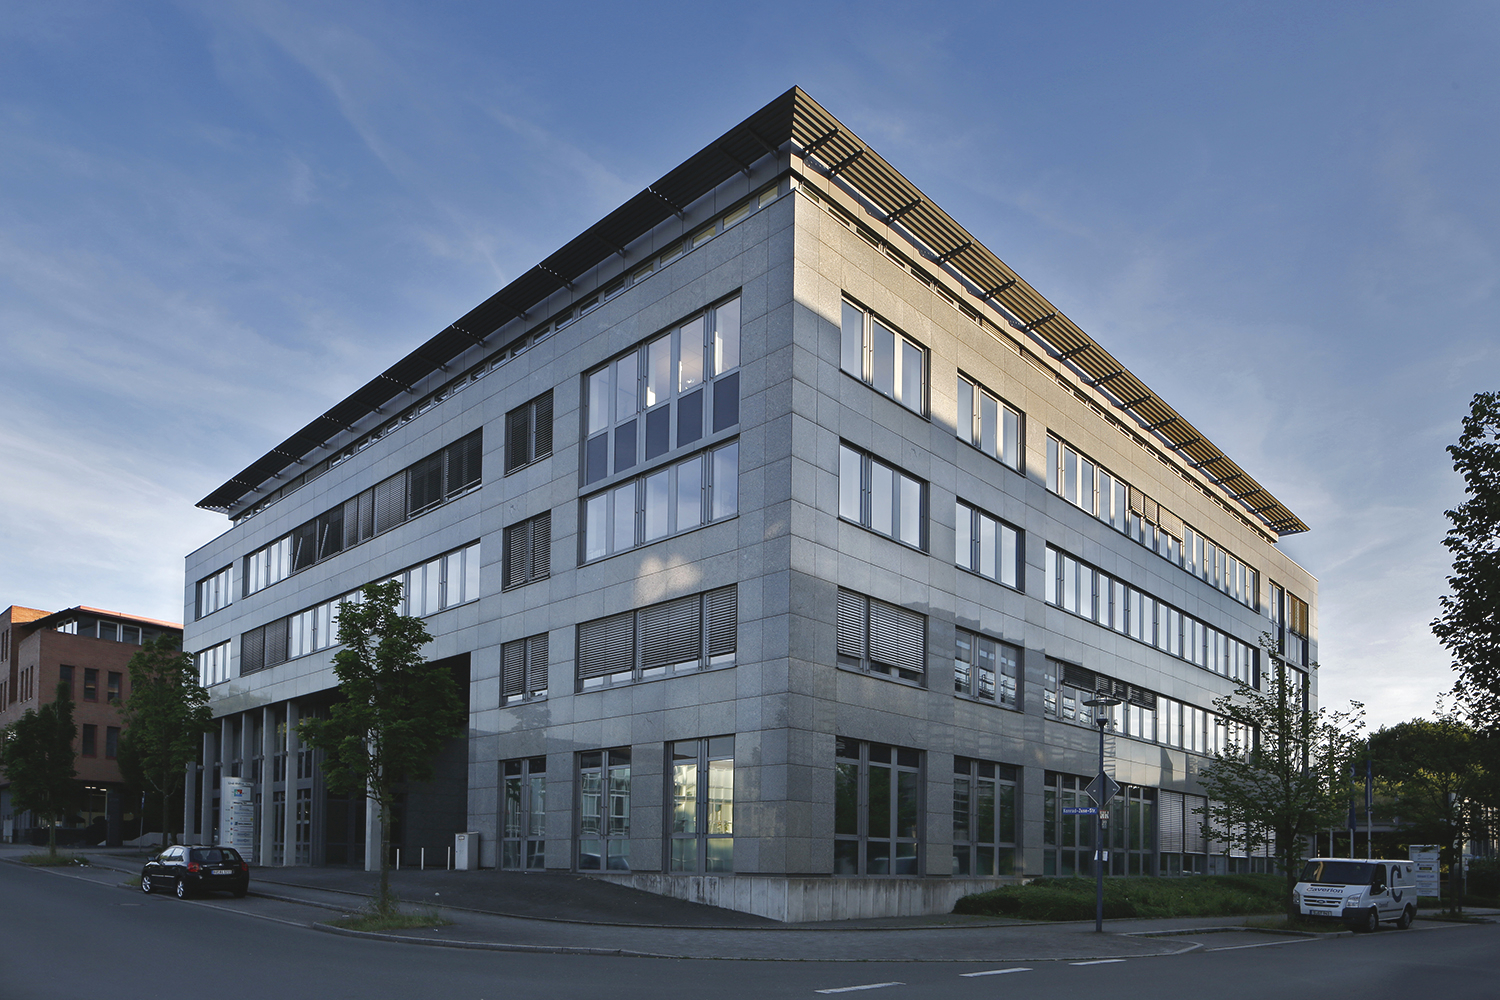 Innovationszentrum Bauen (IZB)